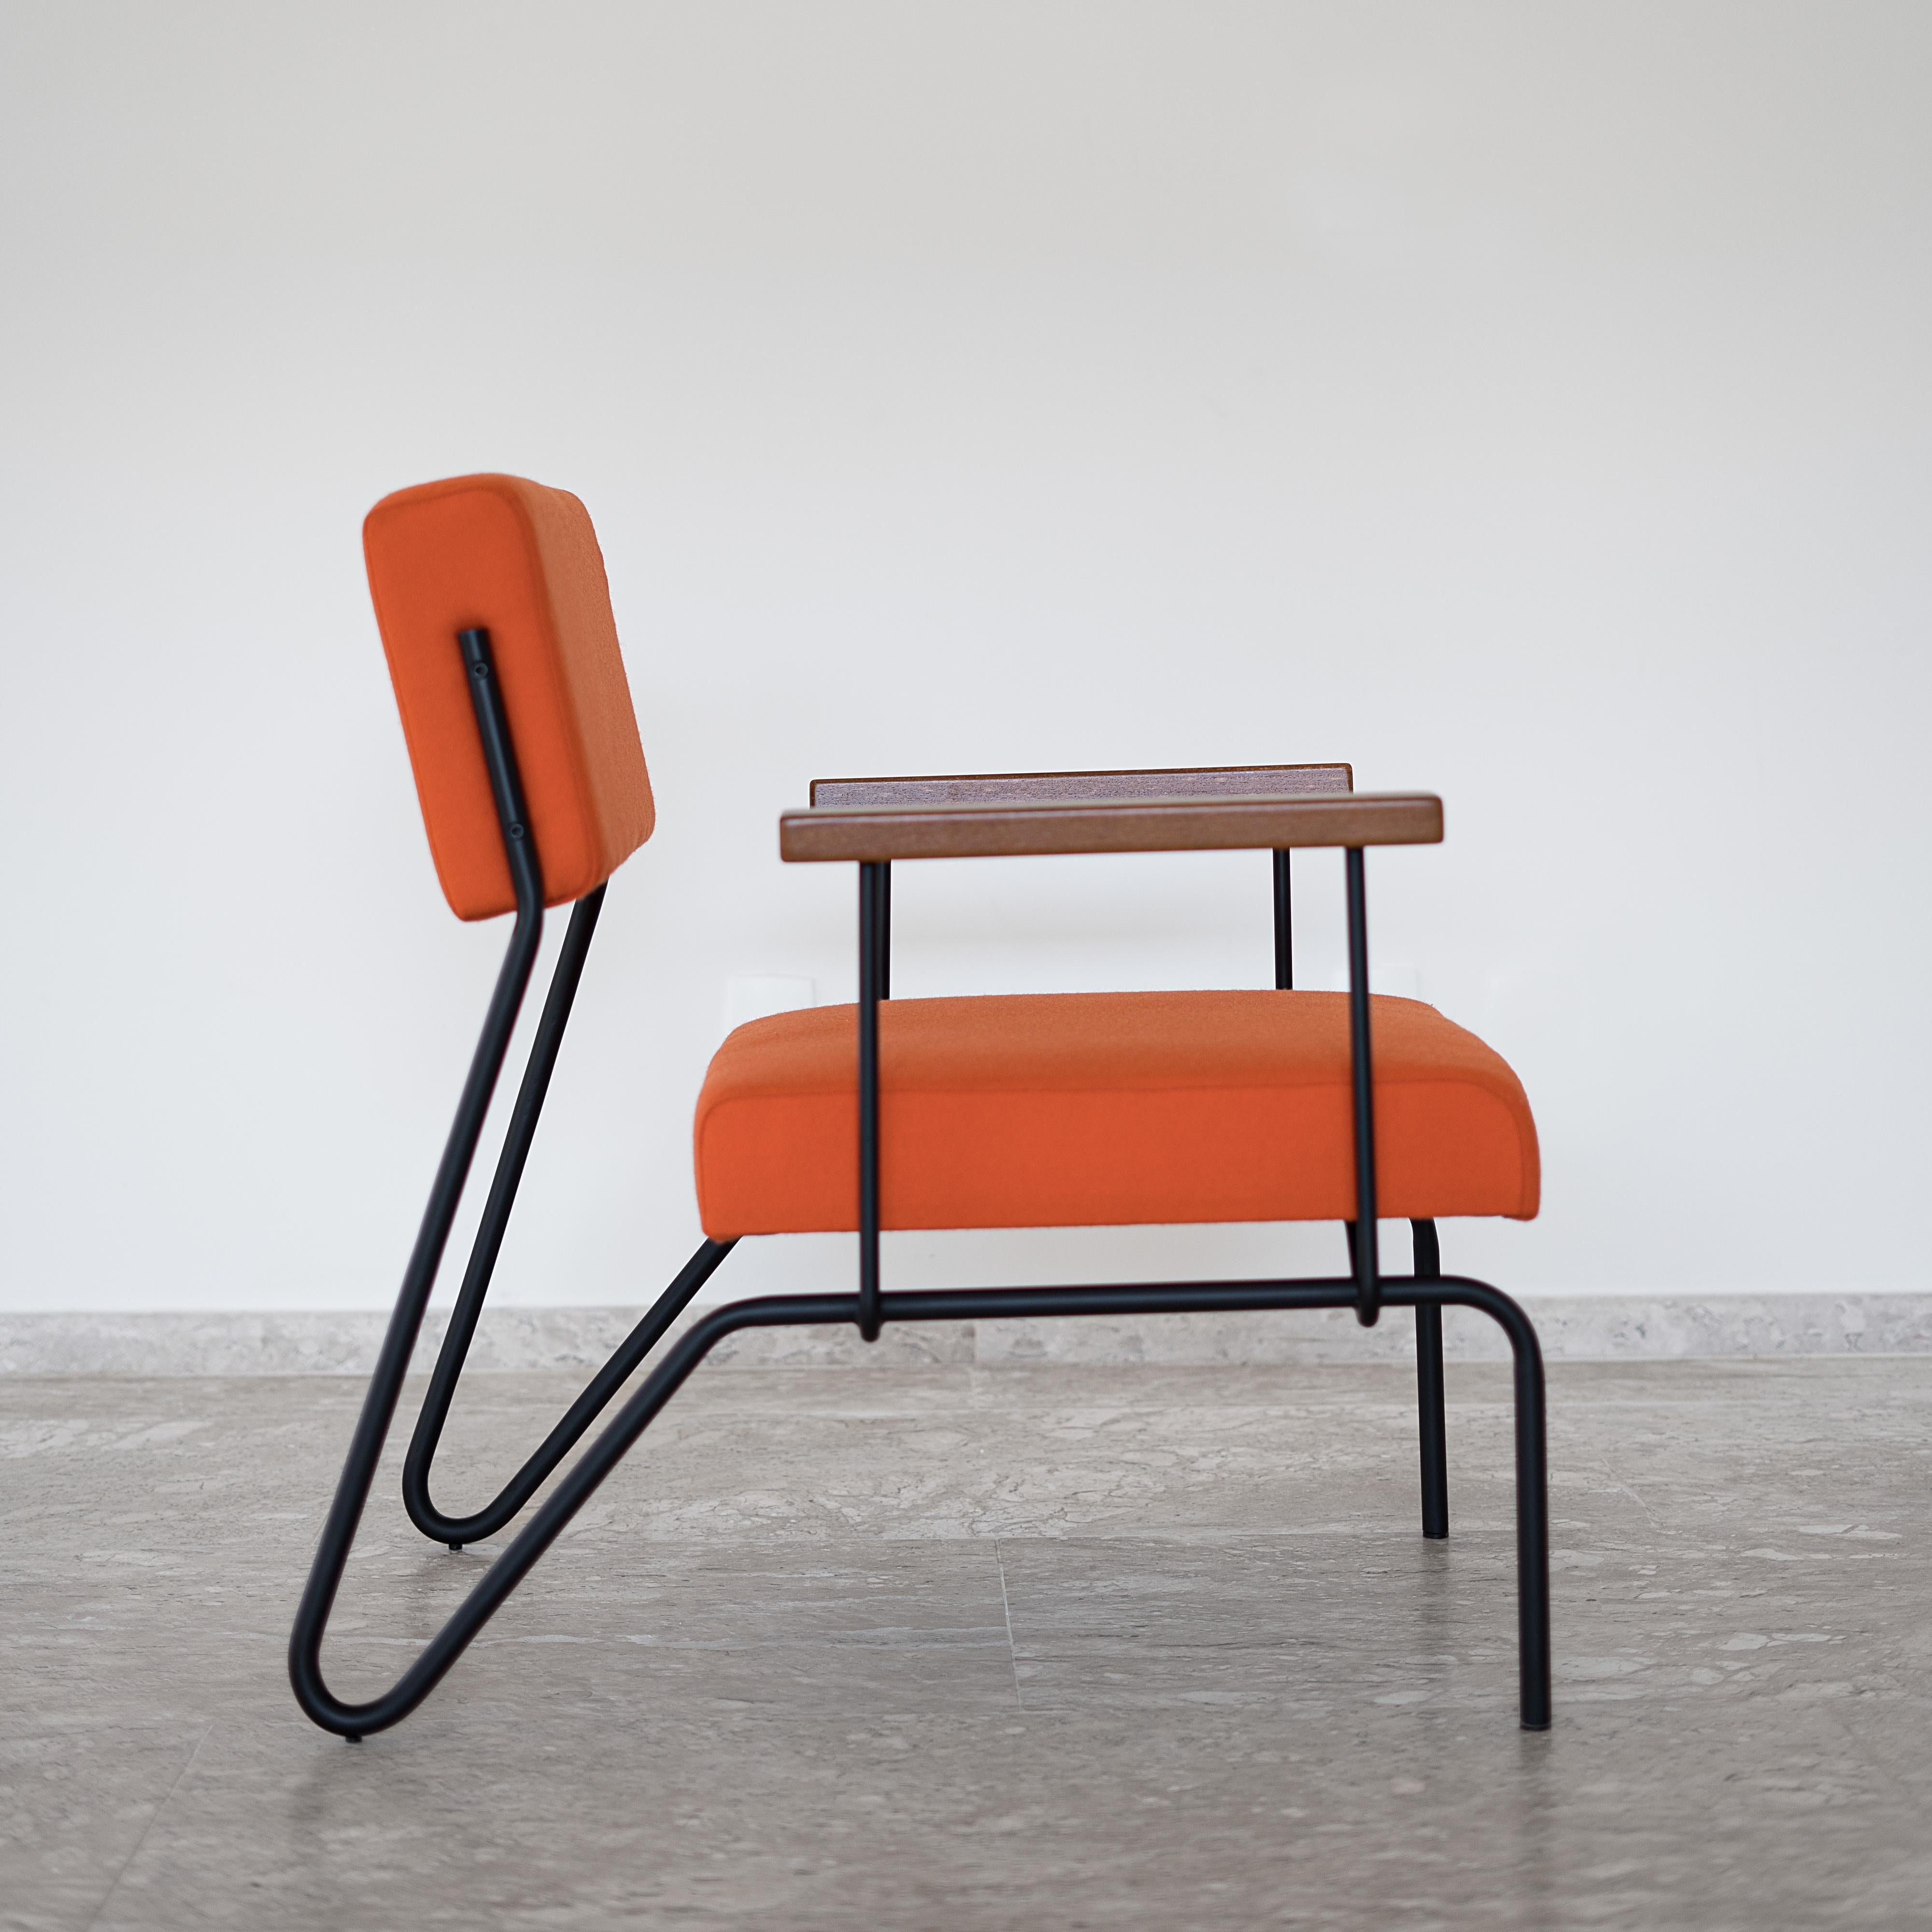 Ce fauteuil minimaliste primé en acier, bois massif et cuir est conçu avec une conception classique et géométrique. 
La continuité des lignes structurelles suggère la fluidité. Le dossier offre un mouvement lisse et, tout comme l'assise, il se